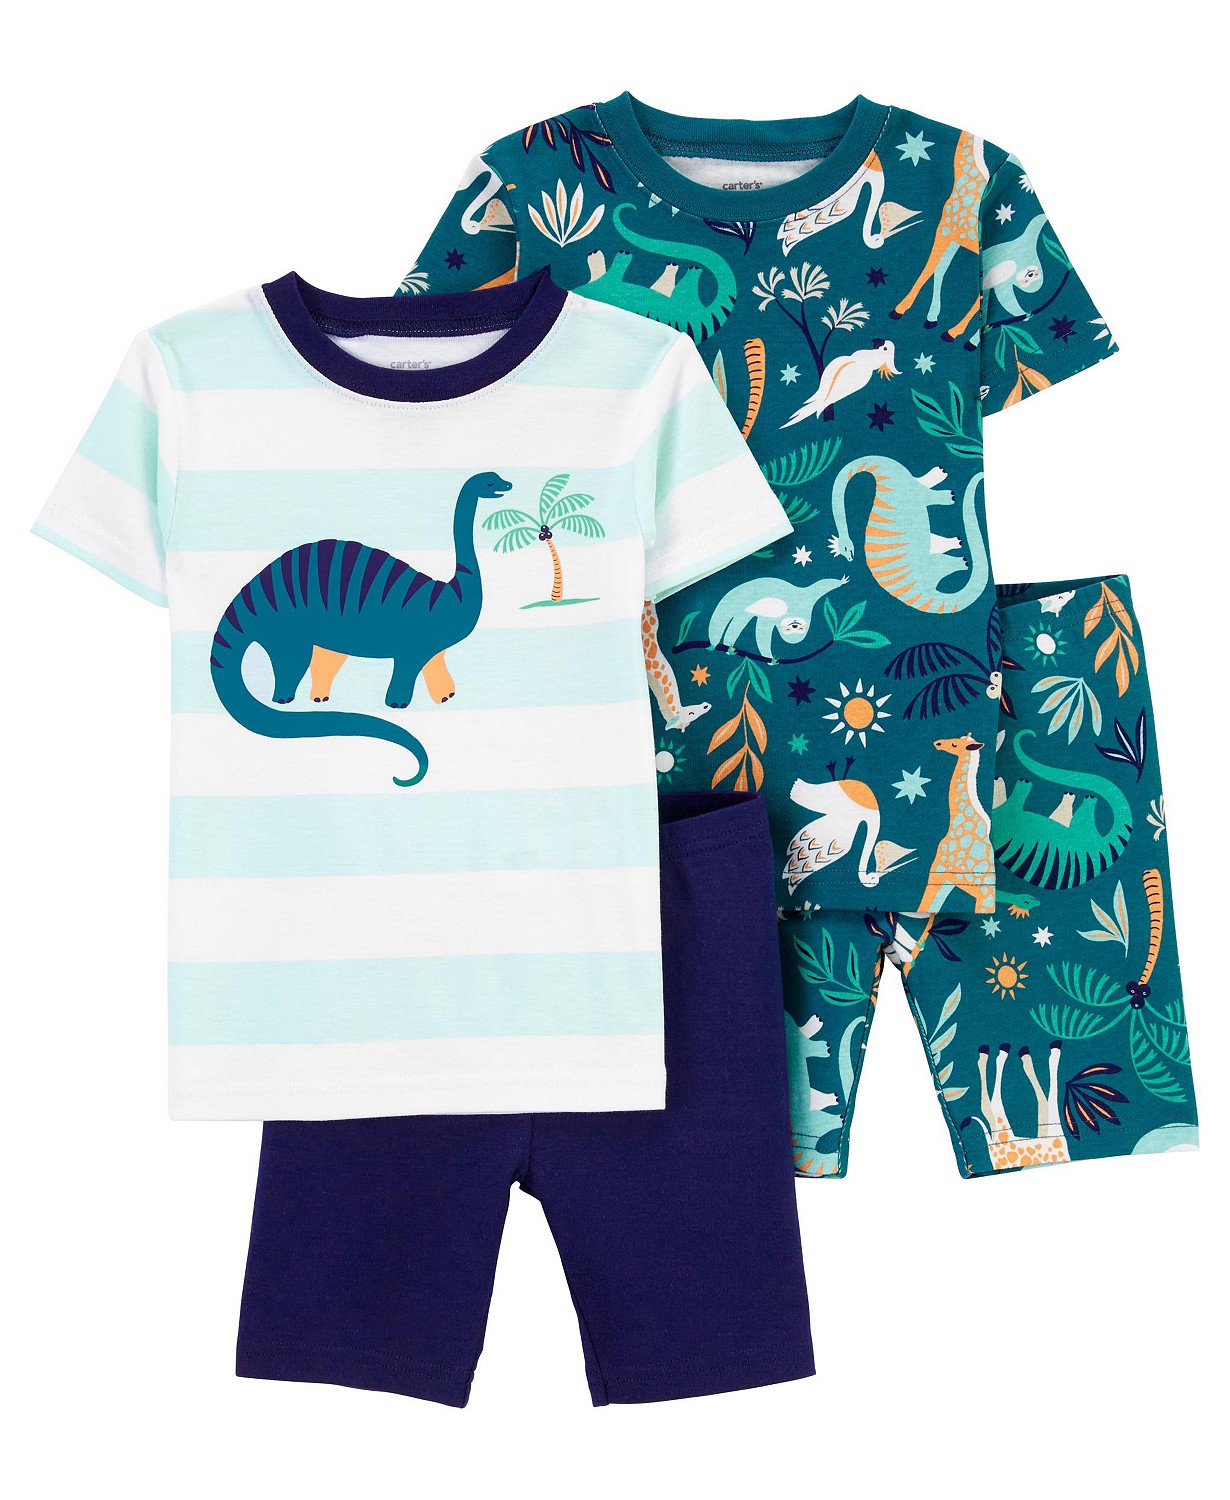 Toddler Boys Dinosaur Snug Fit Mix and Match Cotton Pajamas, 4 Piece Set